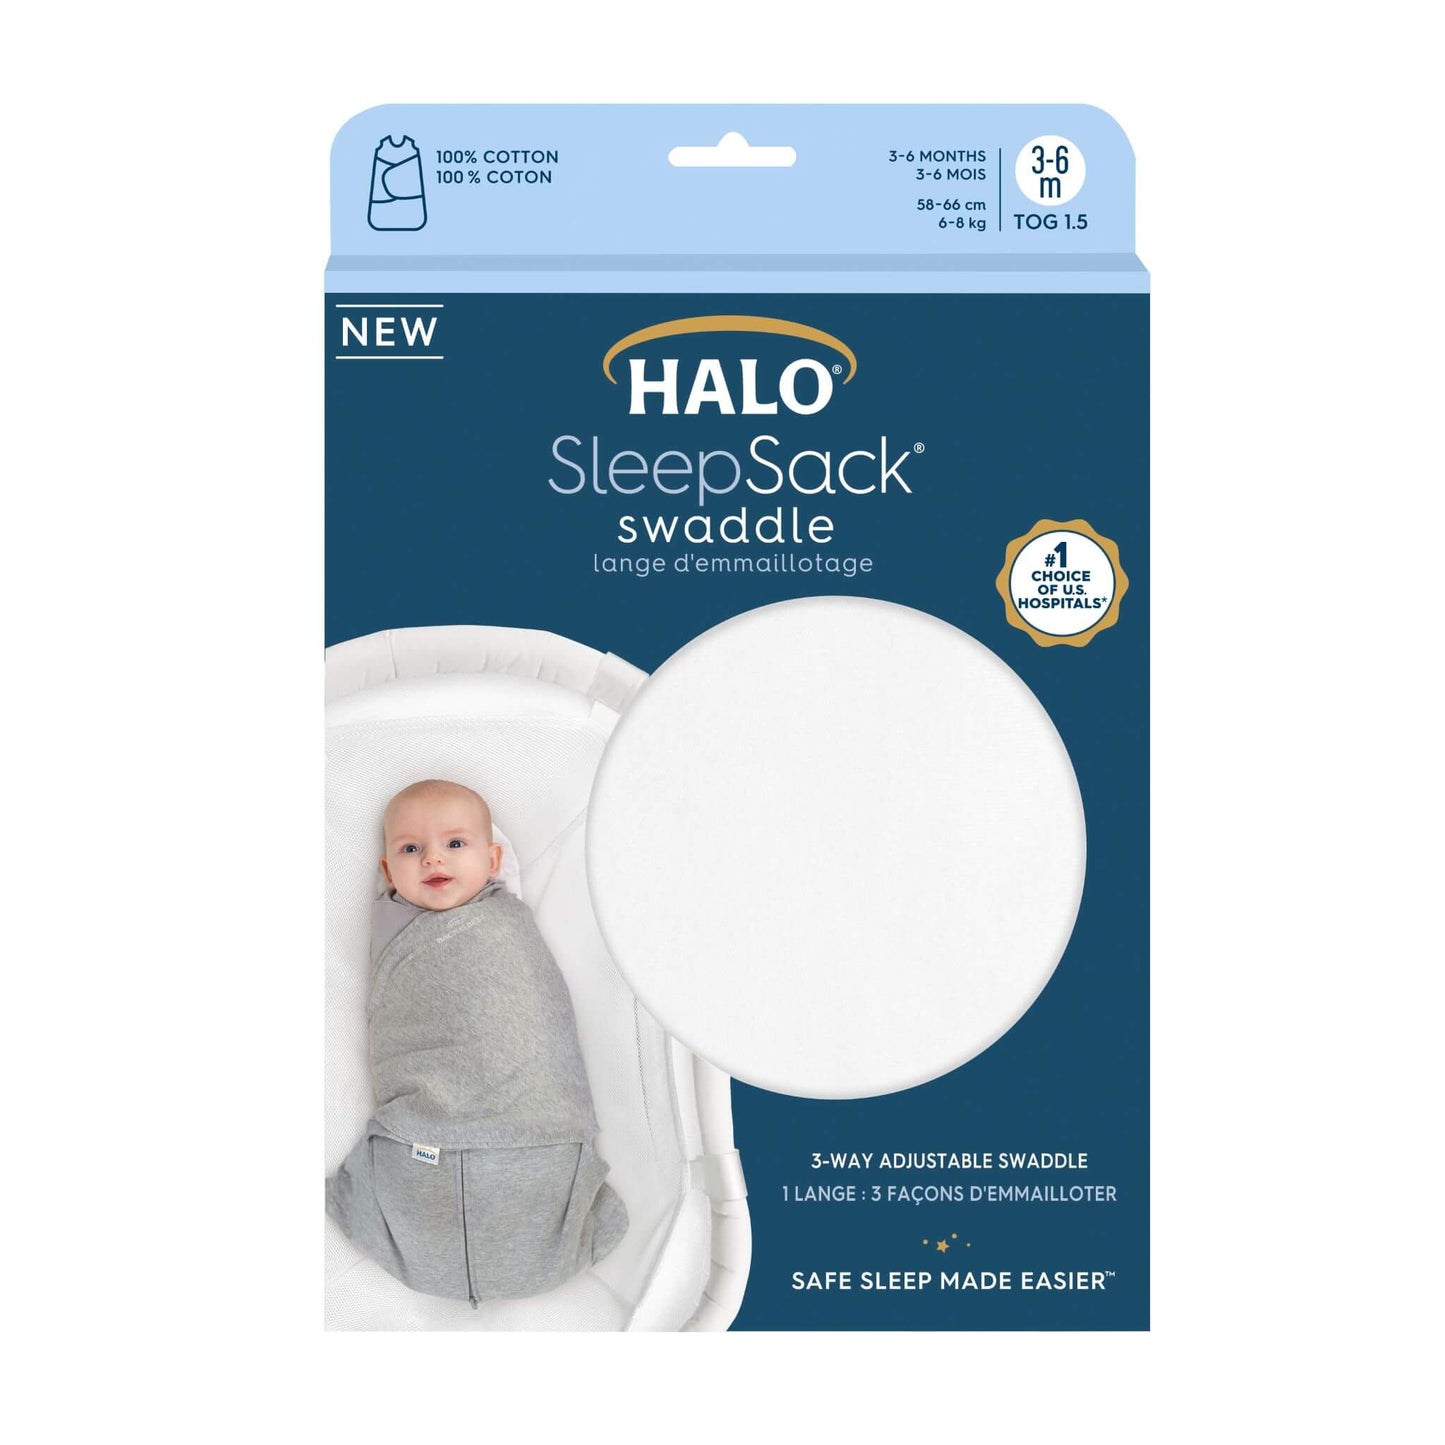 Halo SleepSack Swaddle - 1.5 Tog (White)